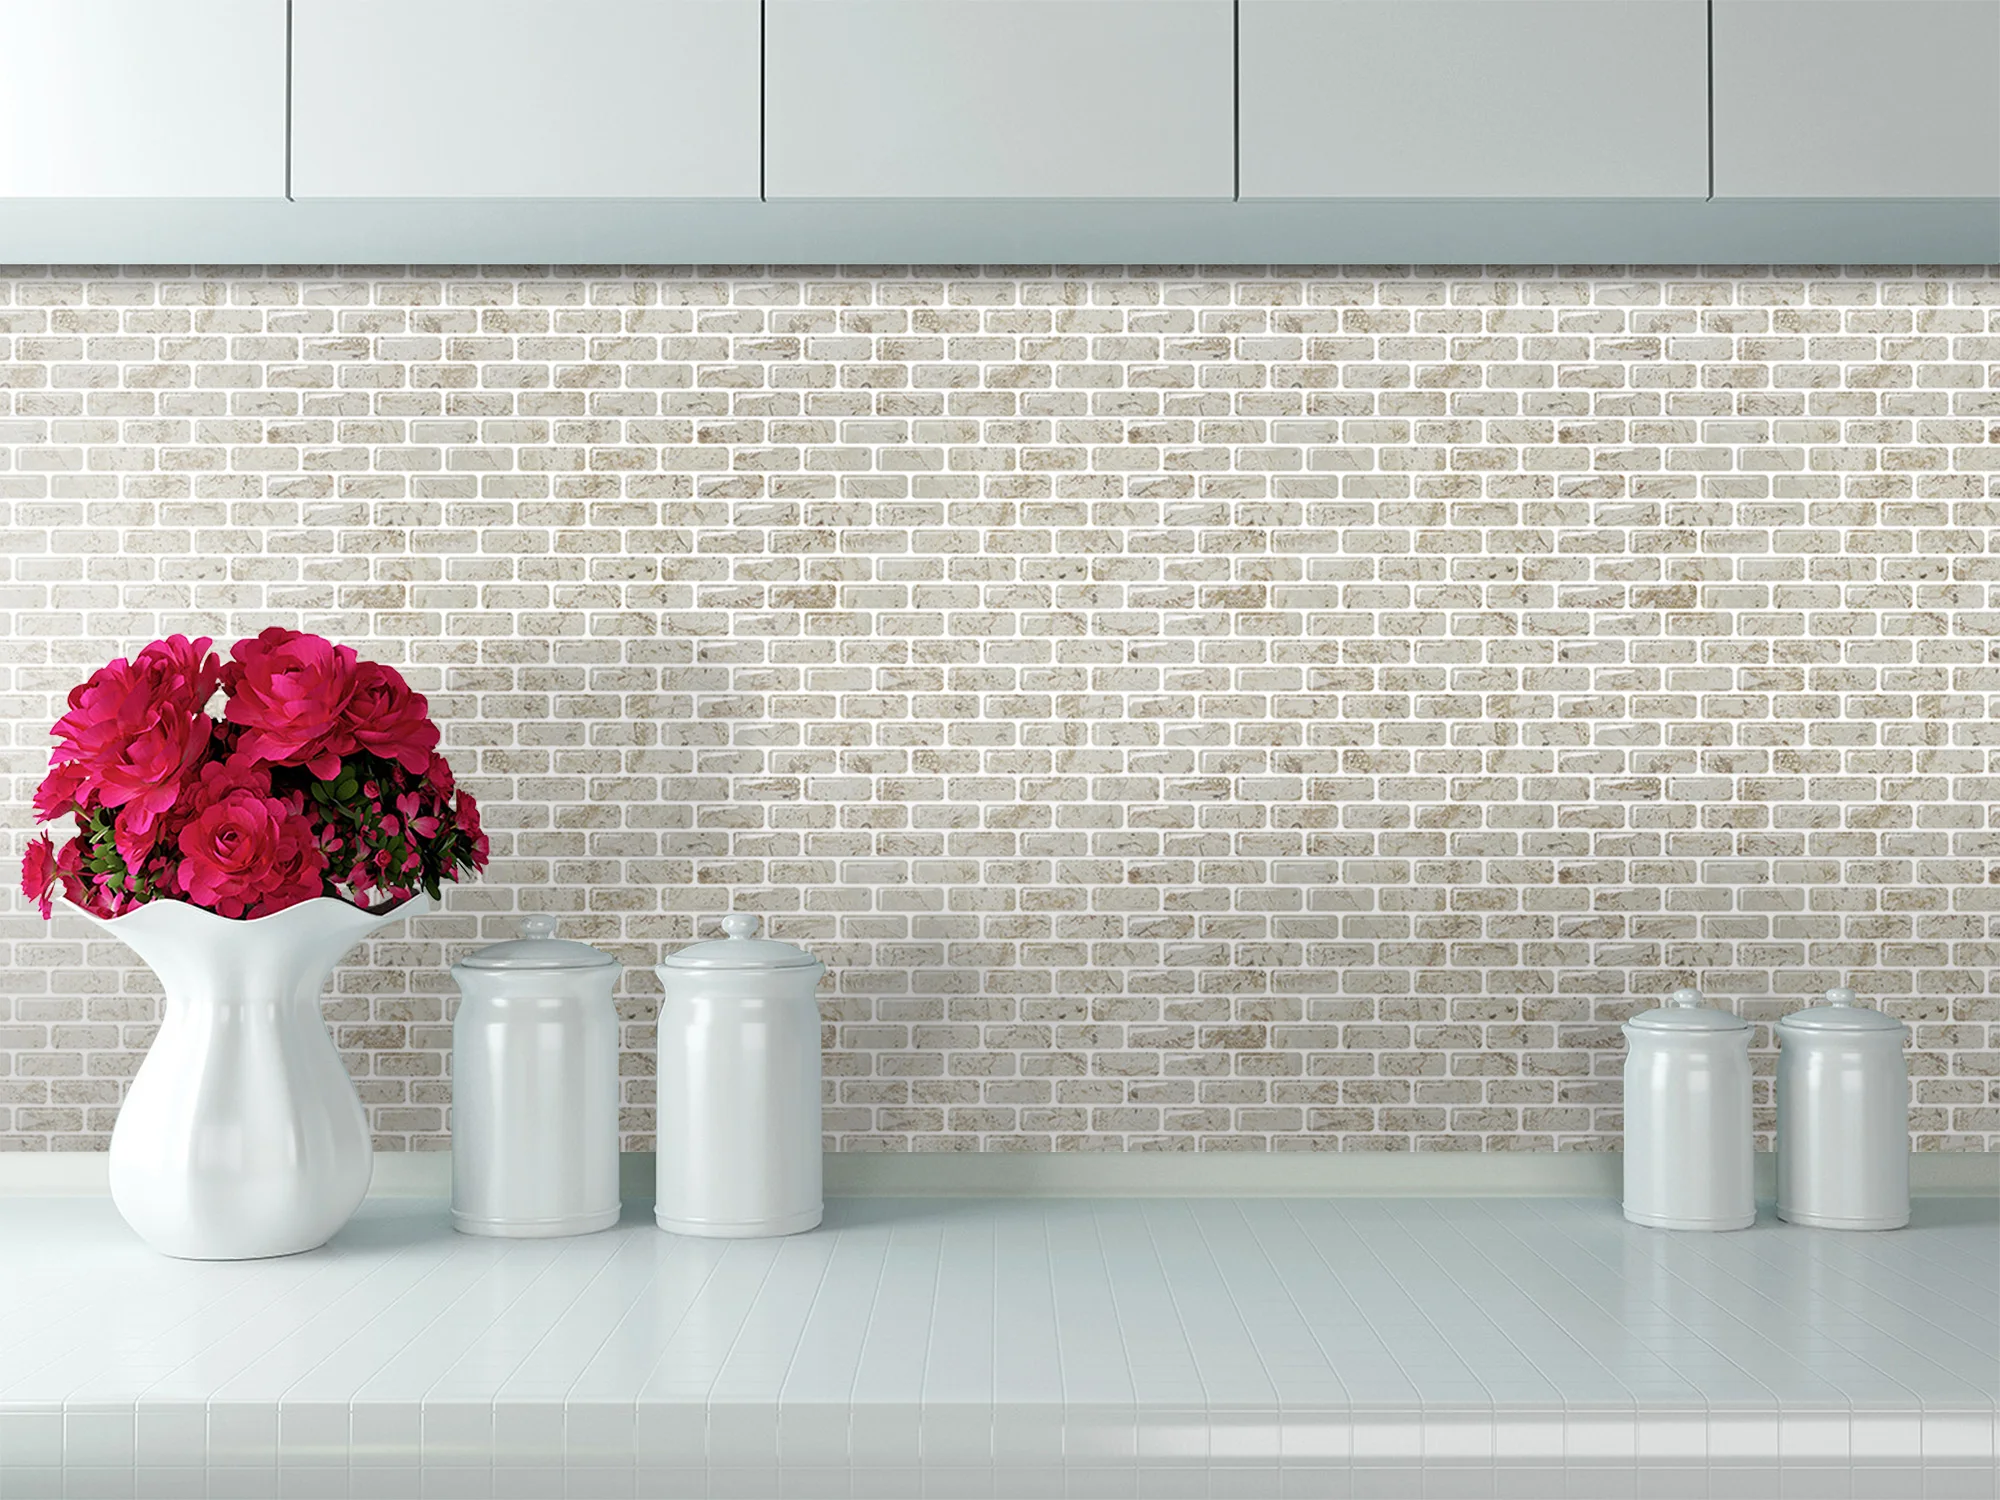 Peel And Stick Wall Tile Lowes For Kitchen Bathroom Backsplash Self Stick Vinyl Tile Buy Plastic Tiles For Bathroom Walls